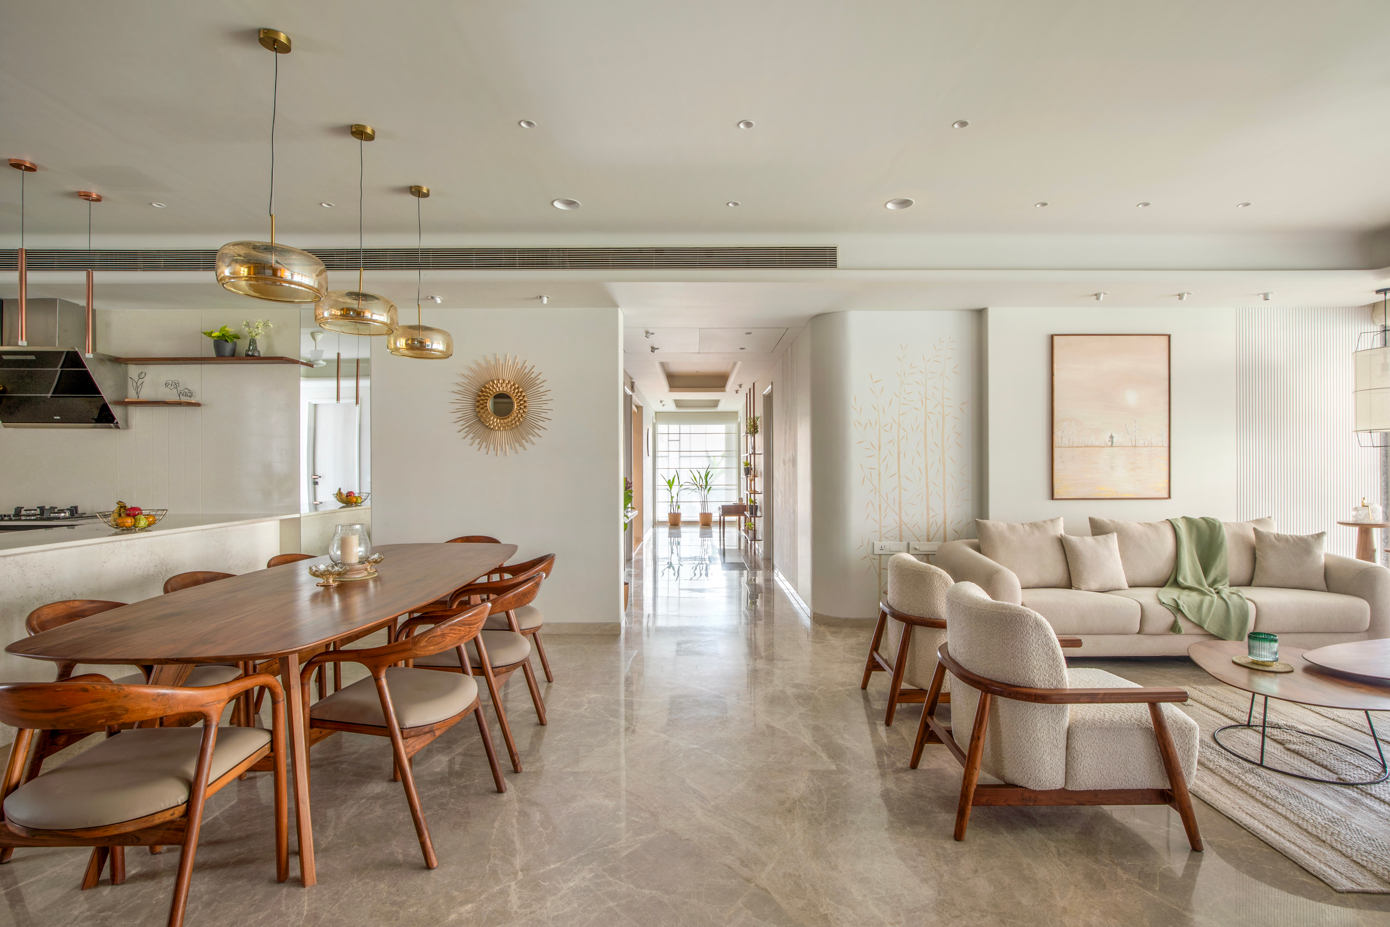 Apartment in Vadodara: Scandinavian Charm Meets Mid-Century Elegance